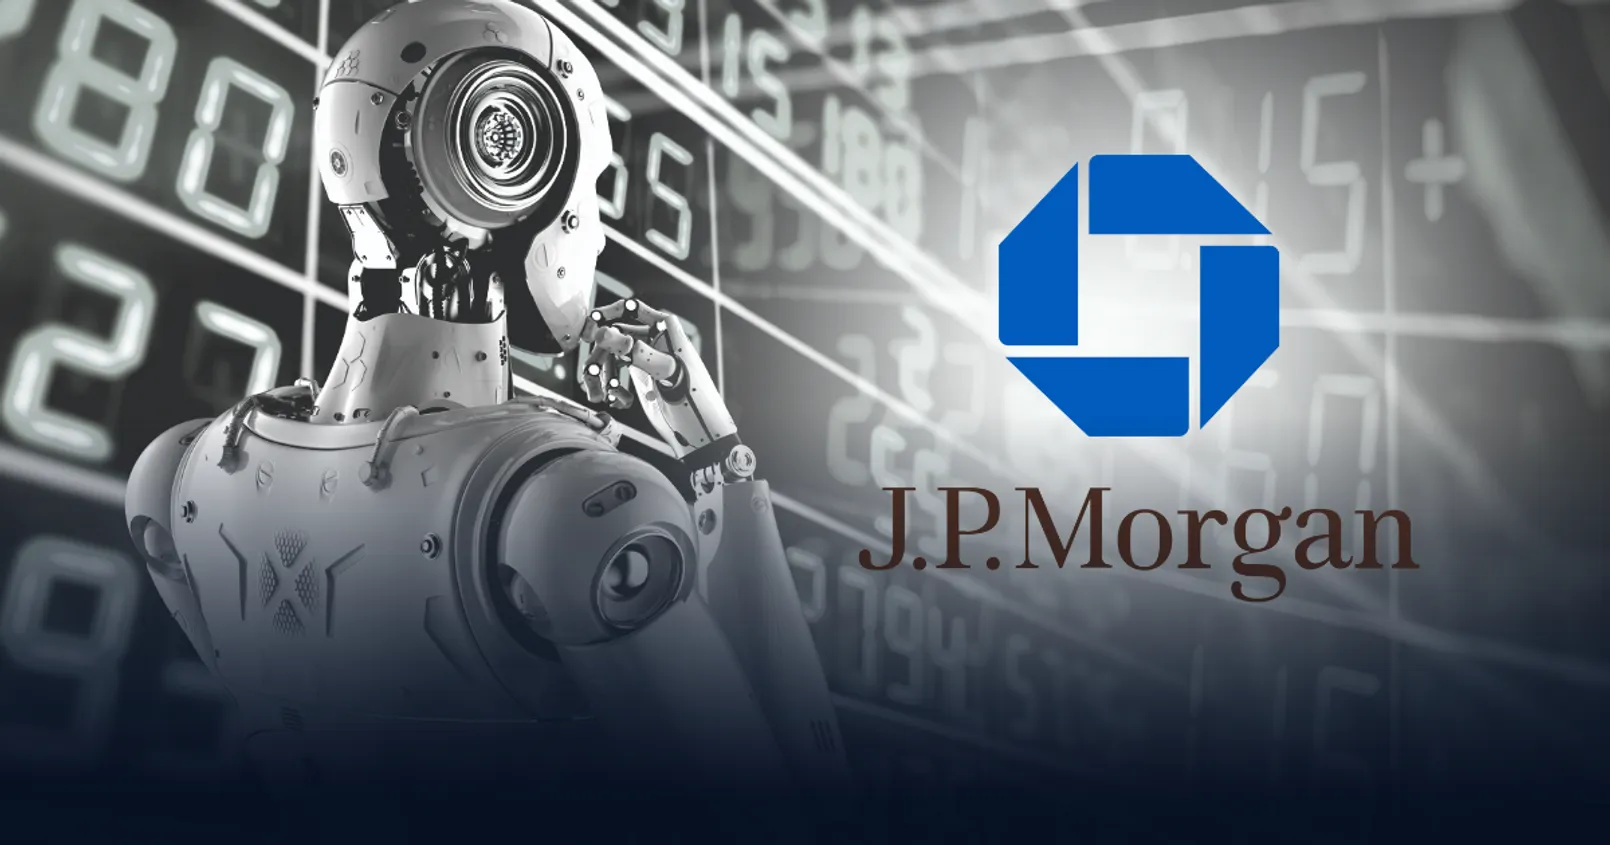 'JPMorgan' เปิดตัวเครื่องมือ AI ช่วยวิเคราะห์แนวโน้มของ Fed